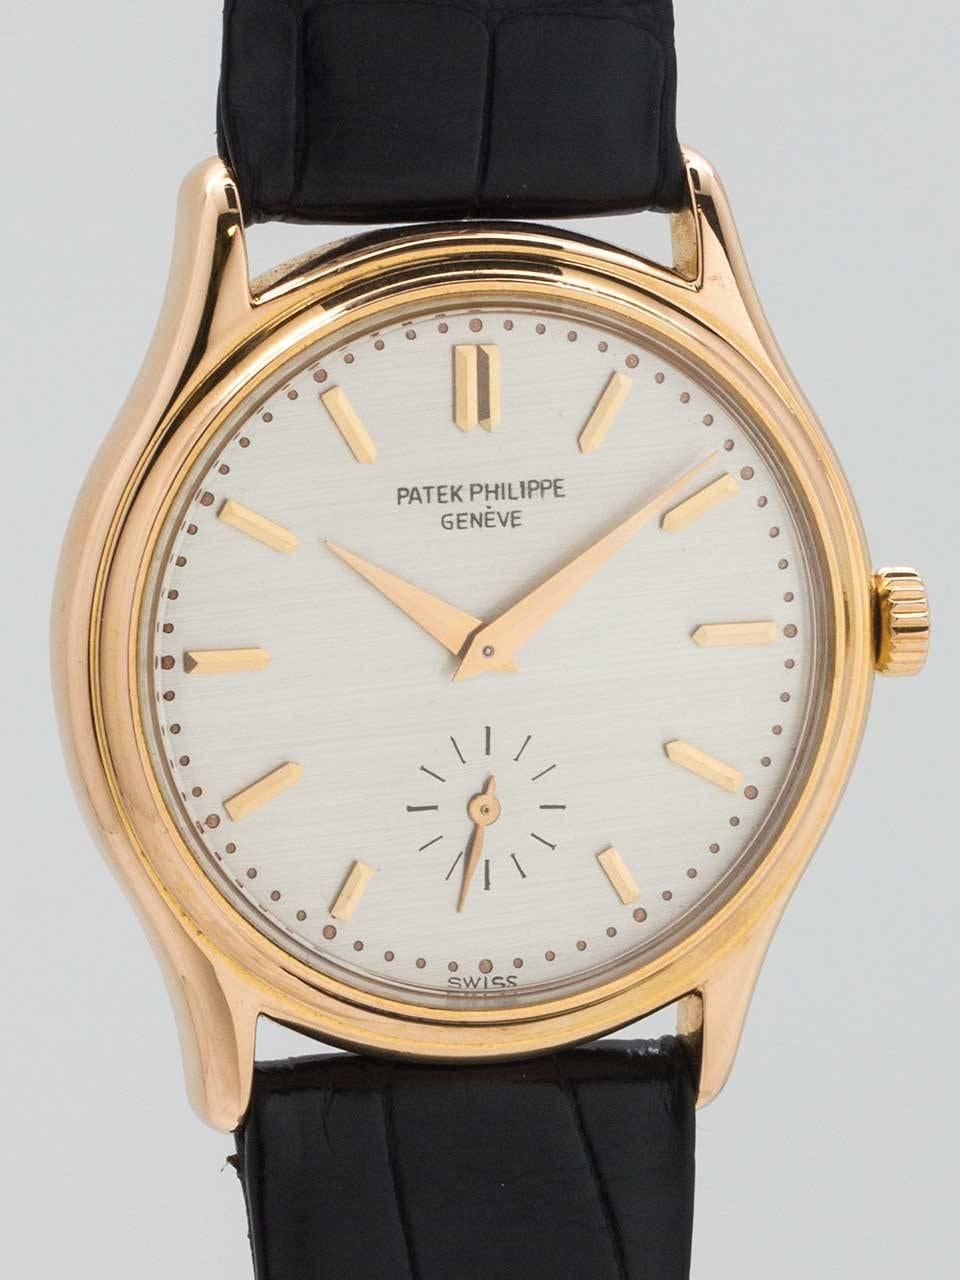 Modern Patek Philippe Rose Gold manual wind Wristwatch Ref 3923, circa 1990